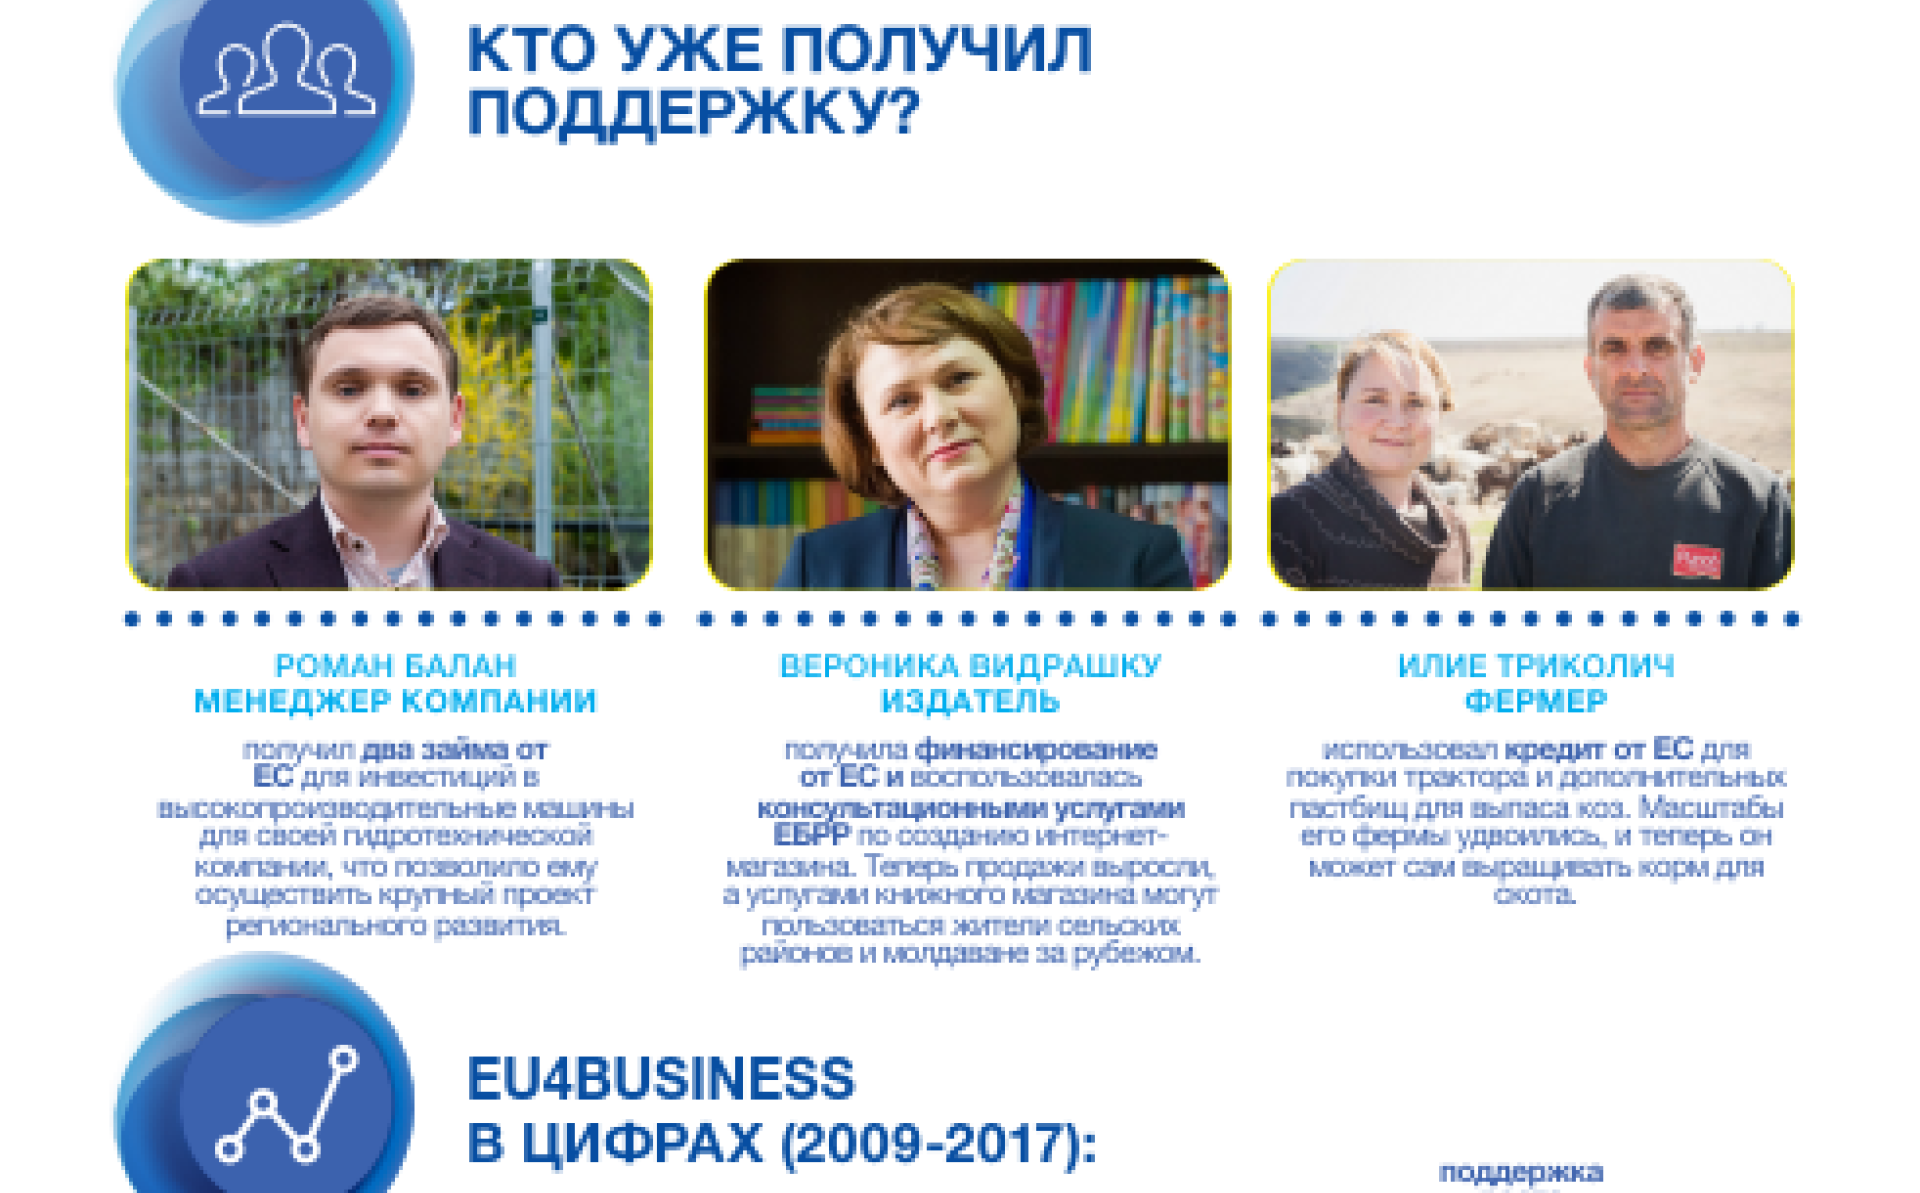 ЕС укрепляет бизнес в Республике Молдова – информационный бюллетень